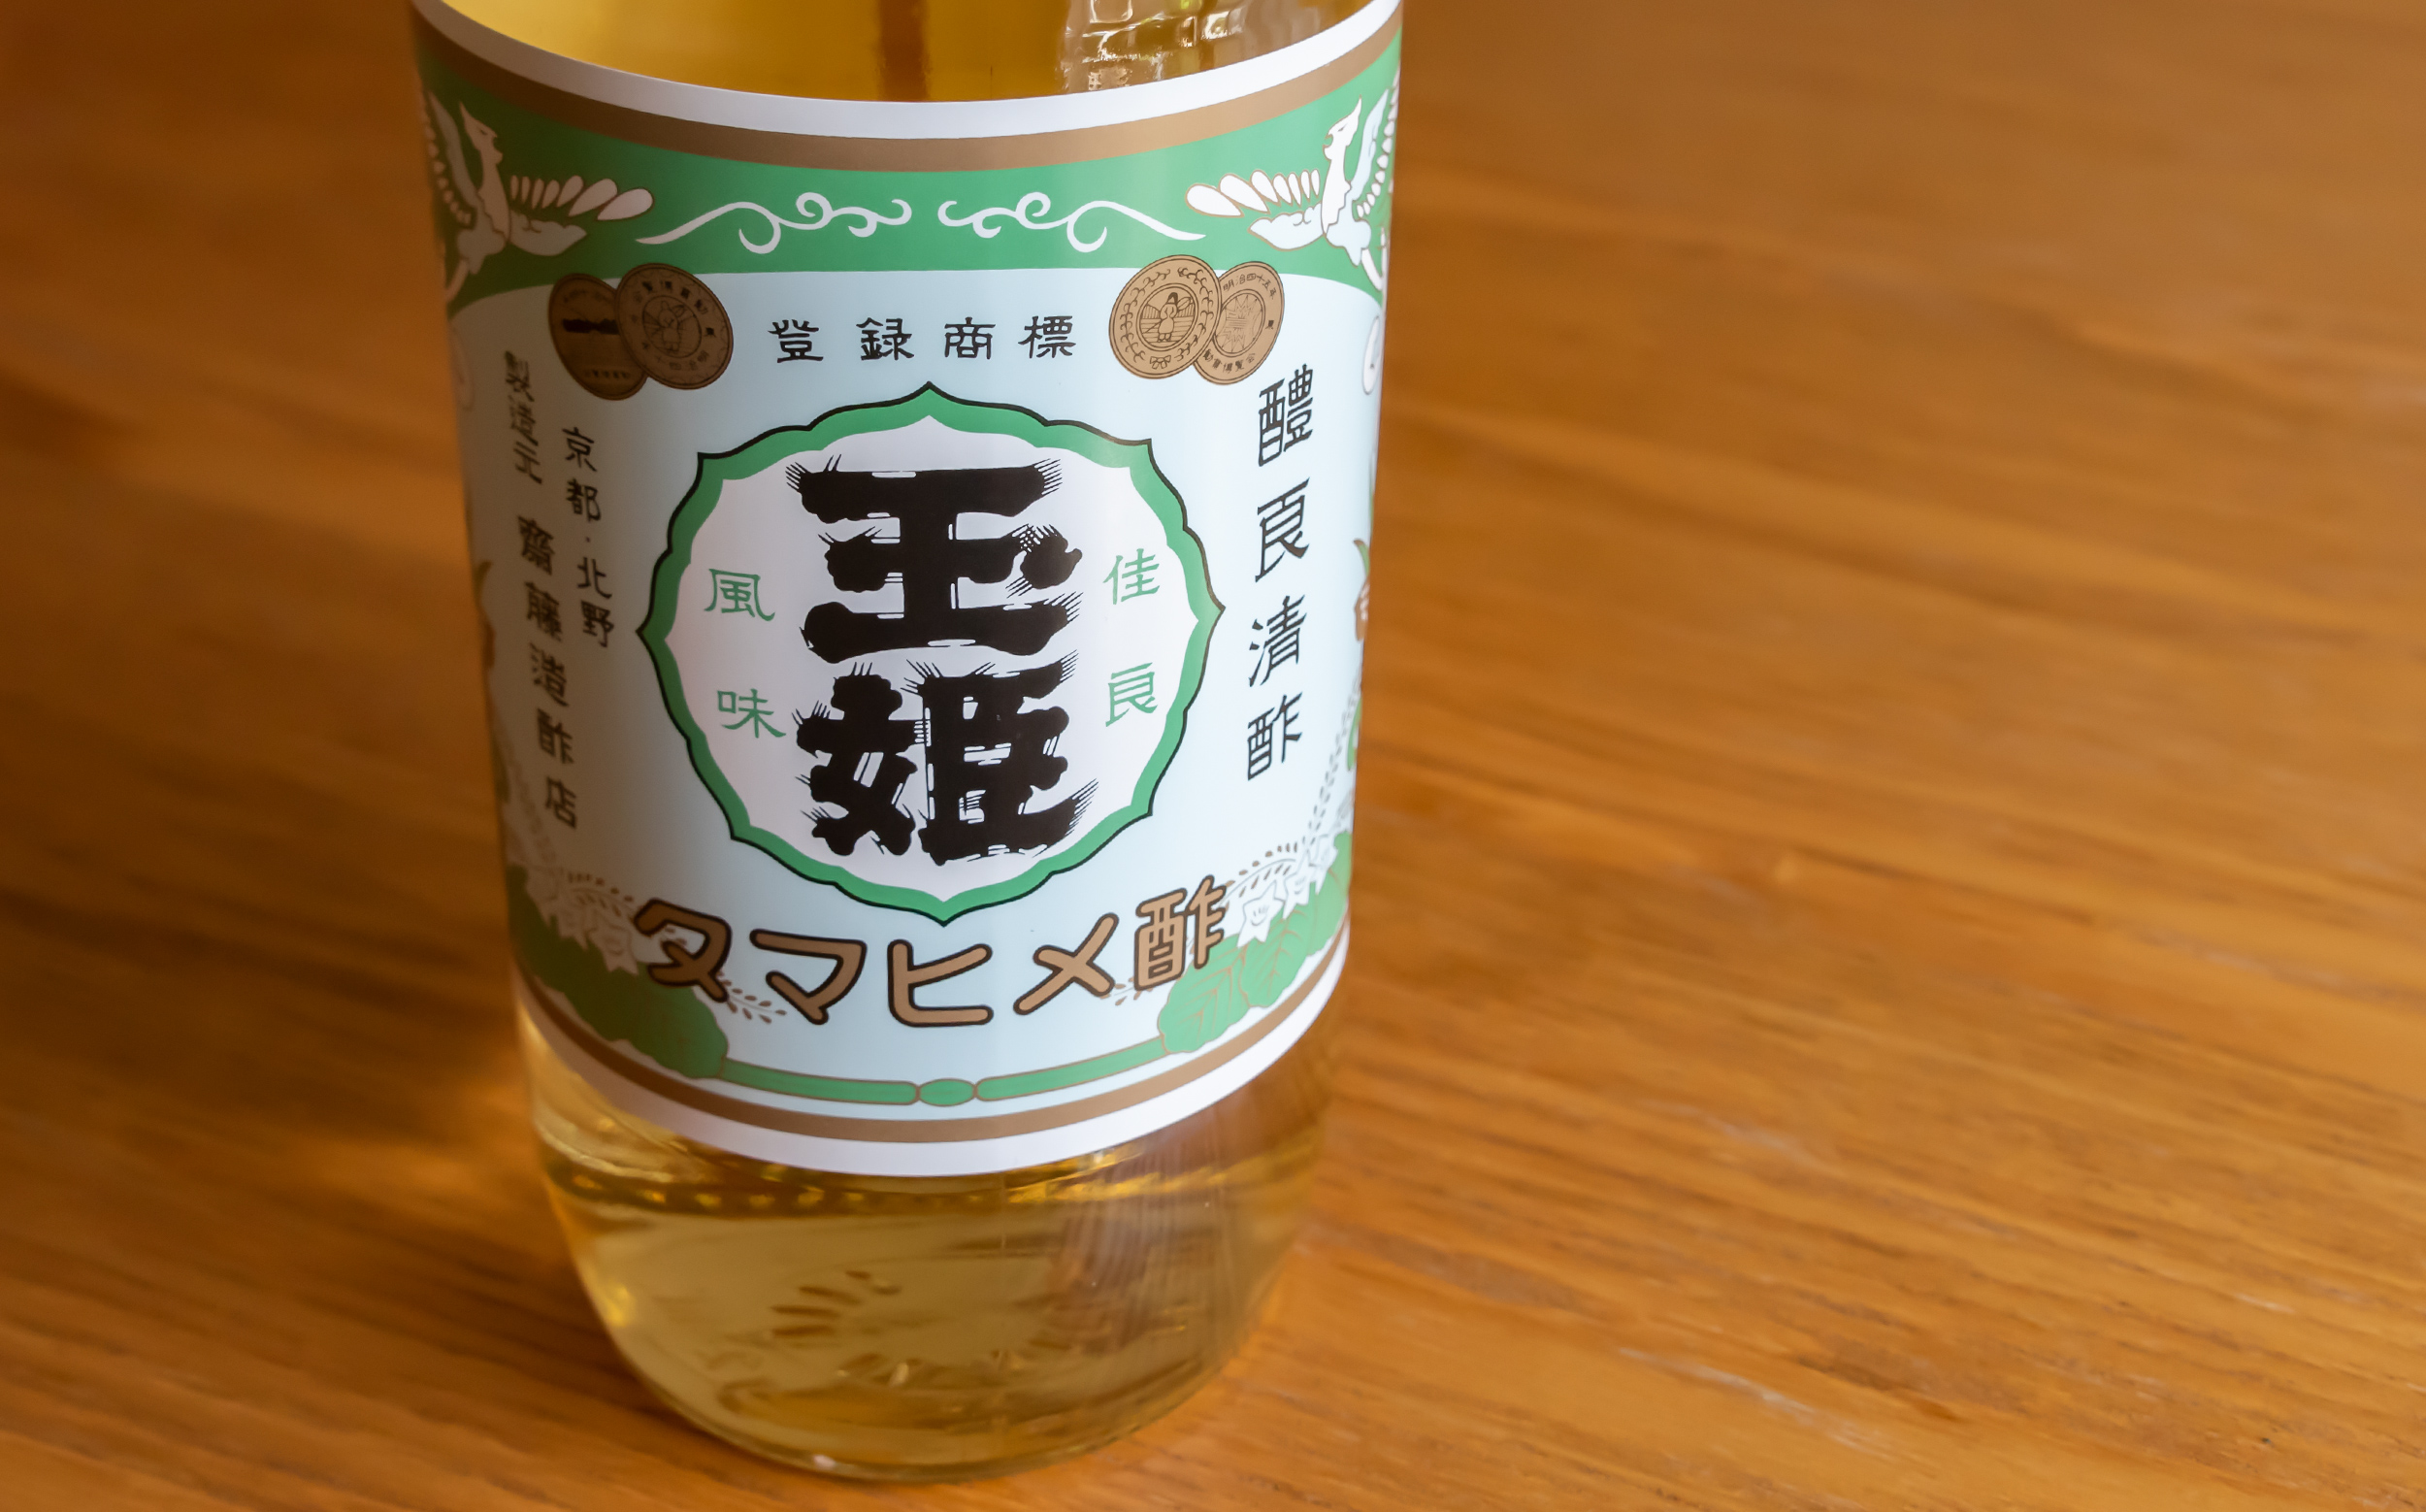 齊藤造酢店の玉姫酢 | Genta Shiozawa：塩澤源太のウェブサイト